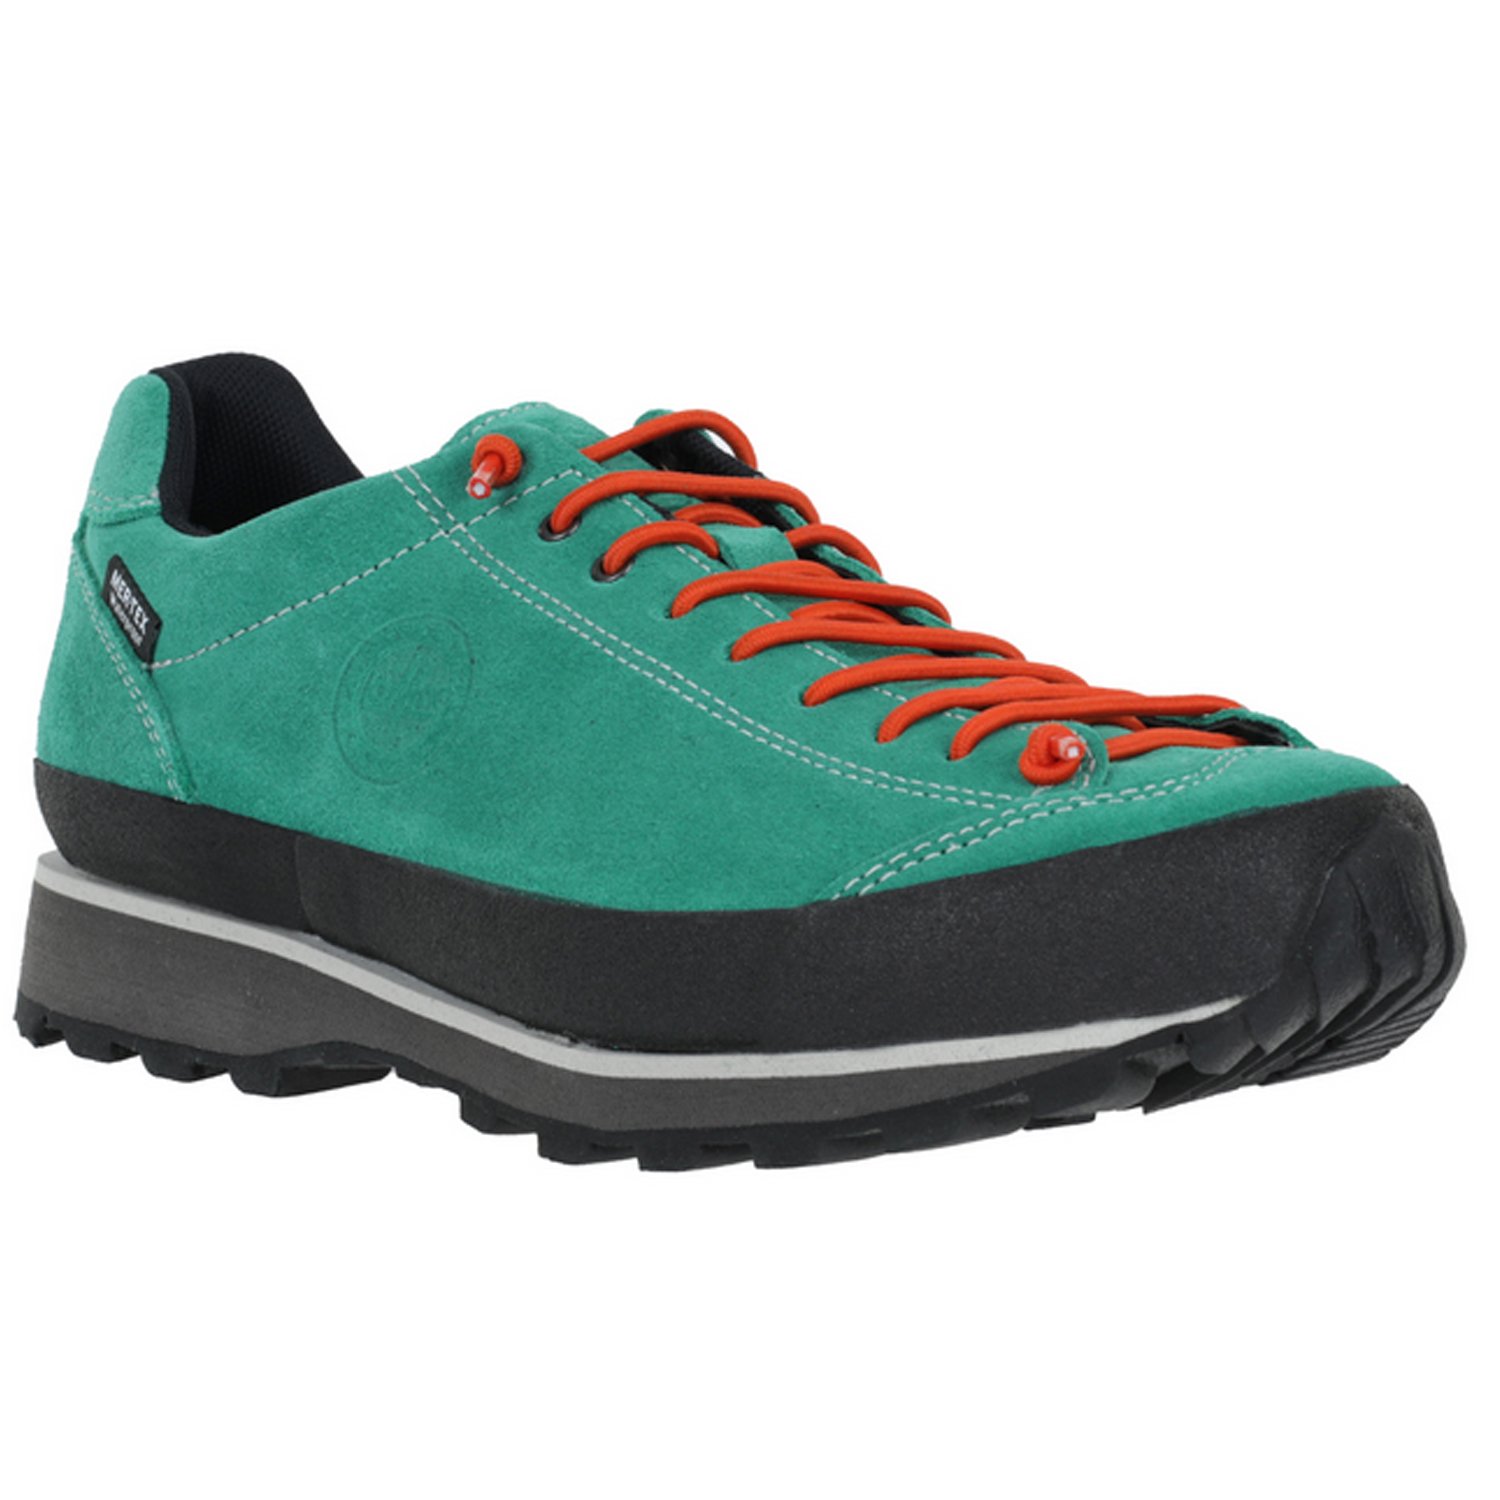 Ботинки Lomer Bio Naturale Suede MTX Elf, мужской, зеленый/оранжевый, 2023-24, 50082_A_27 ботинки lomer bio naturale canvas jasper 38 eu